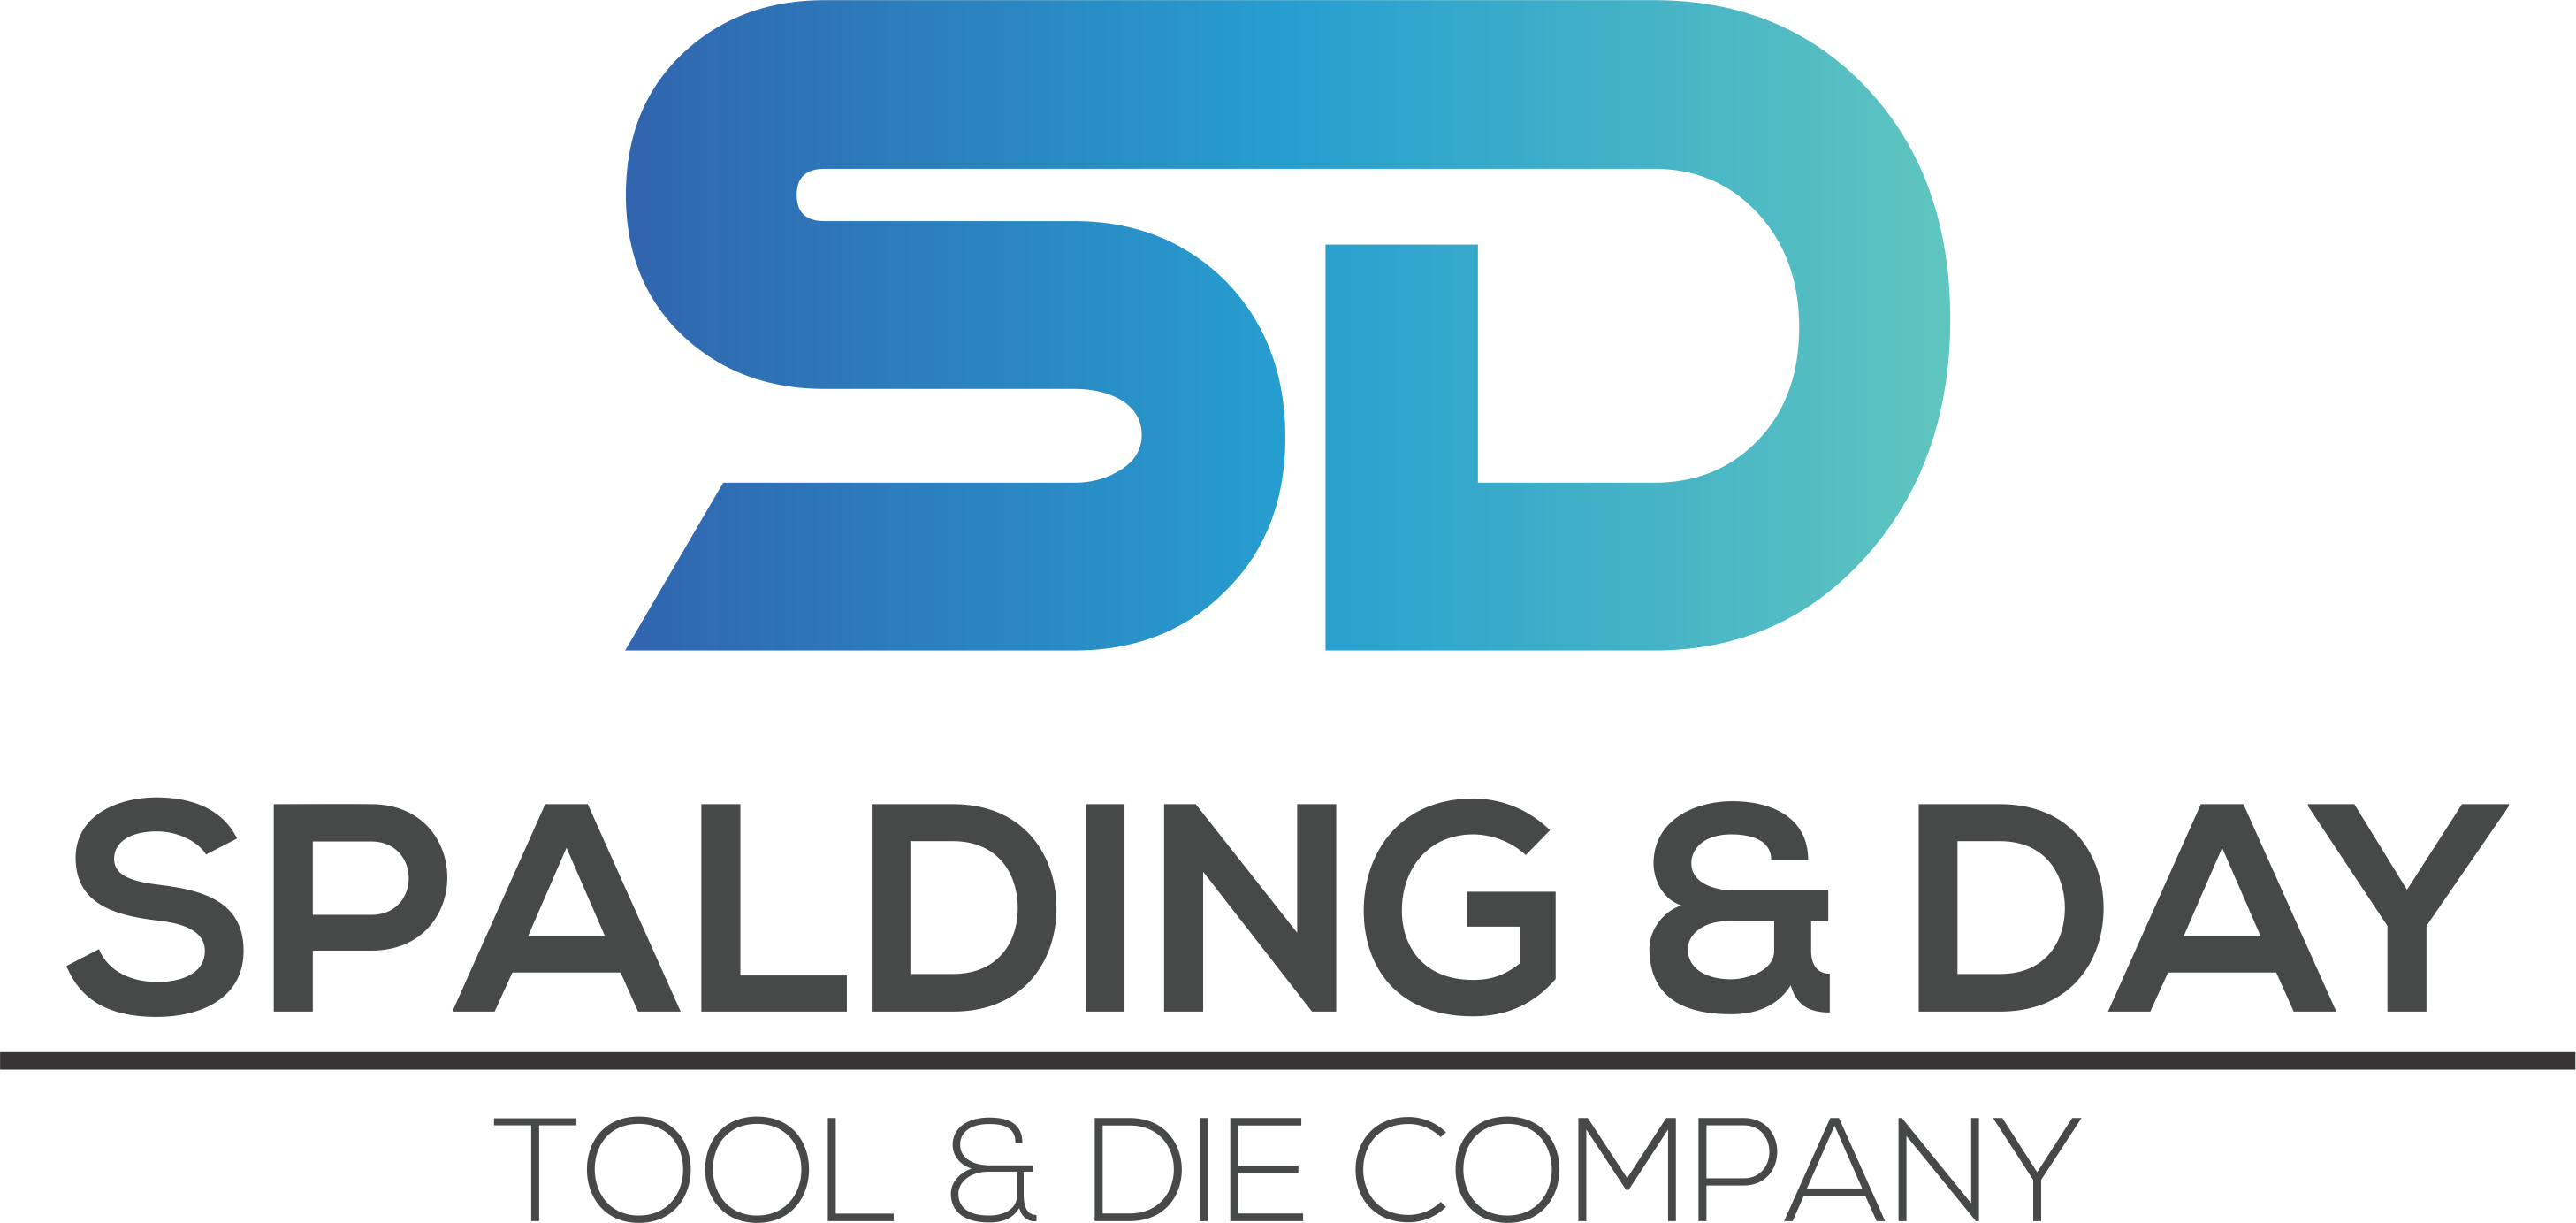 Spalding & Day Tool & Die